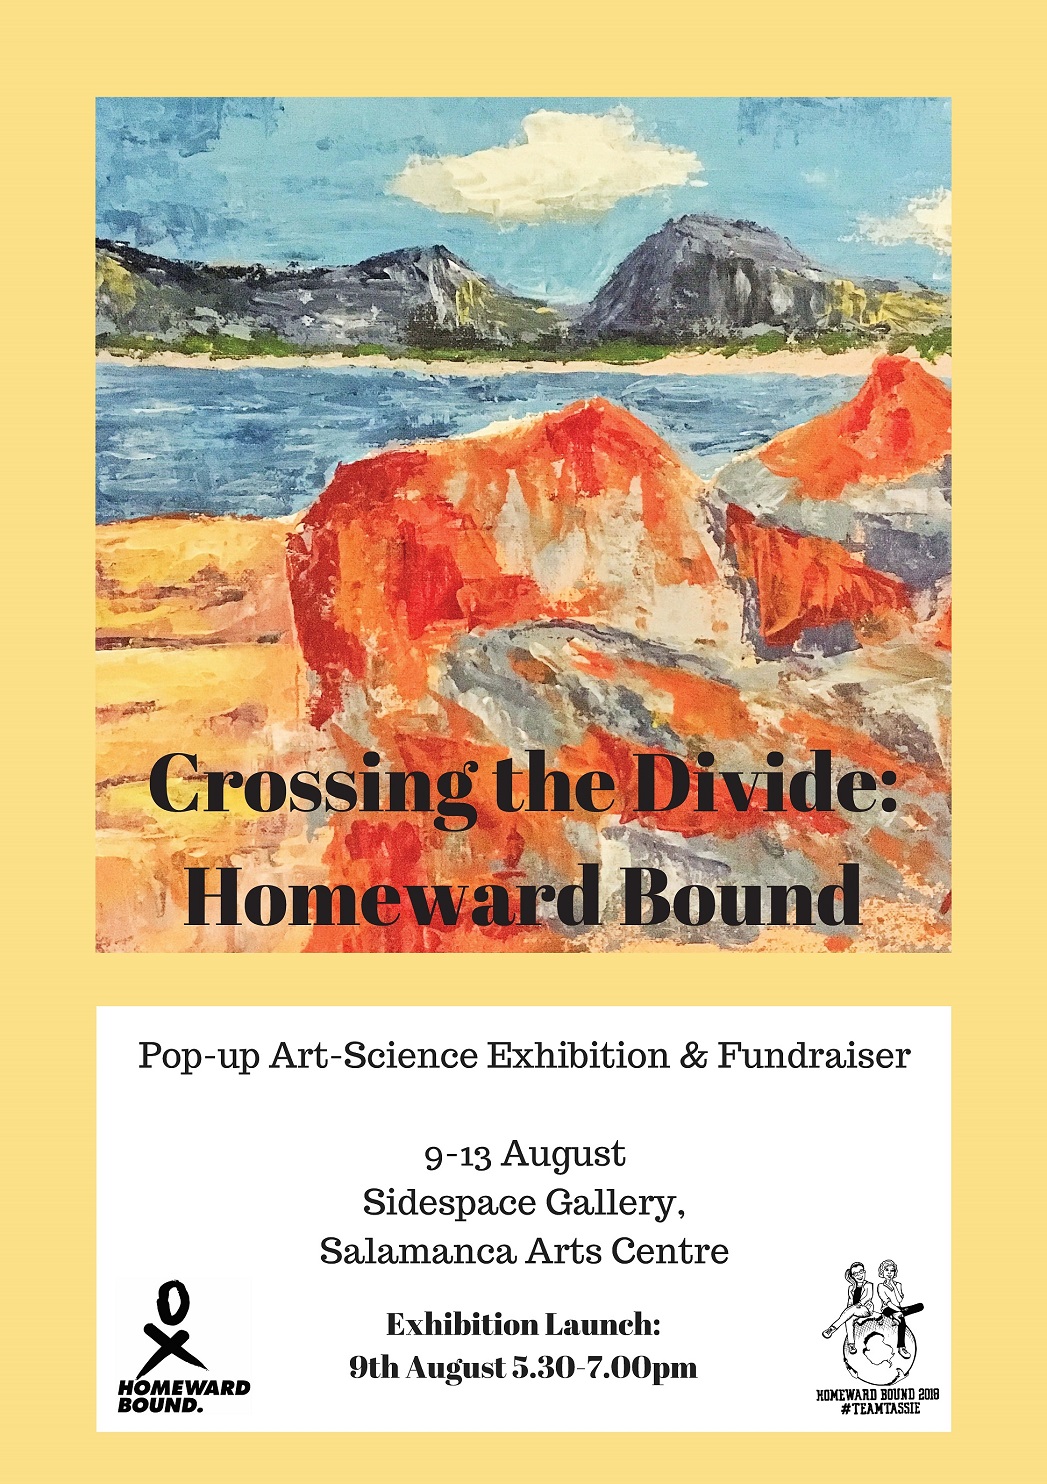 Homeward Bound exhibition poster